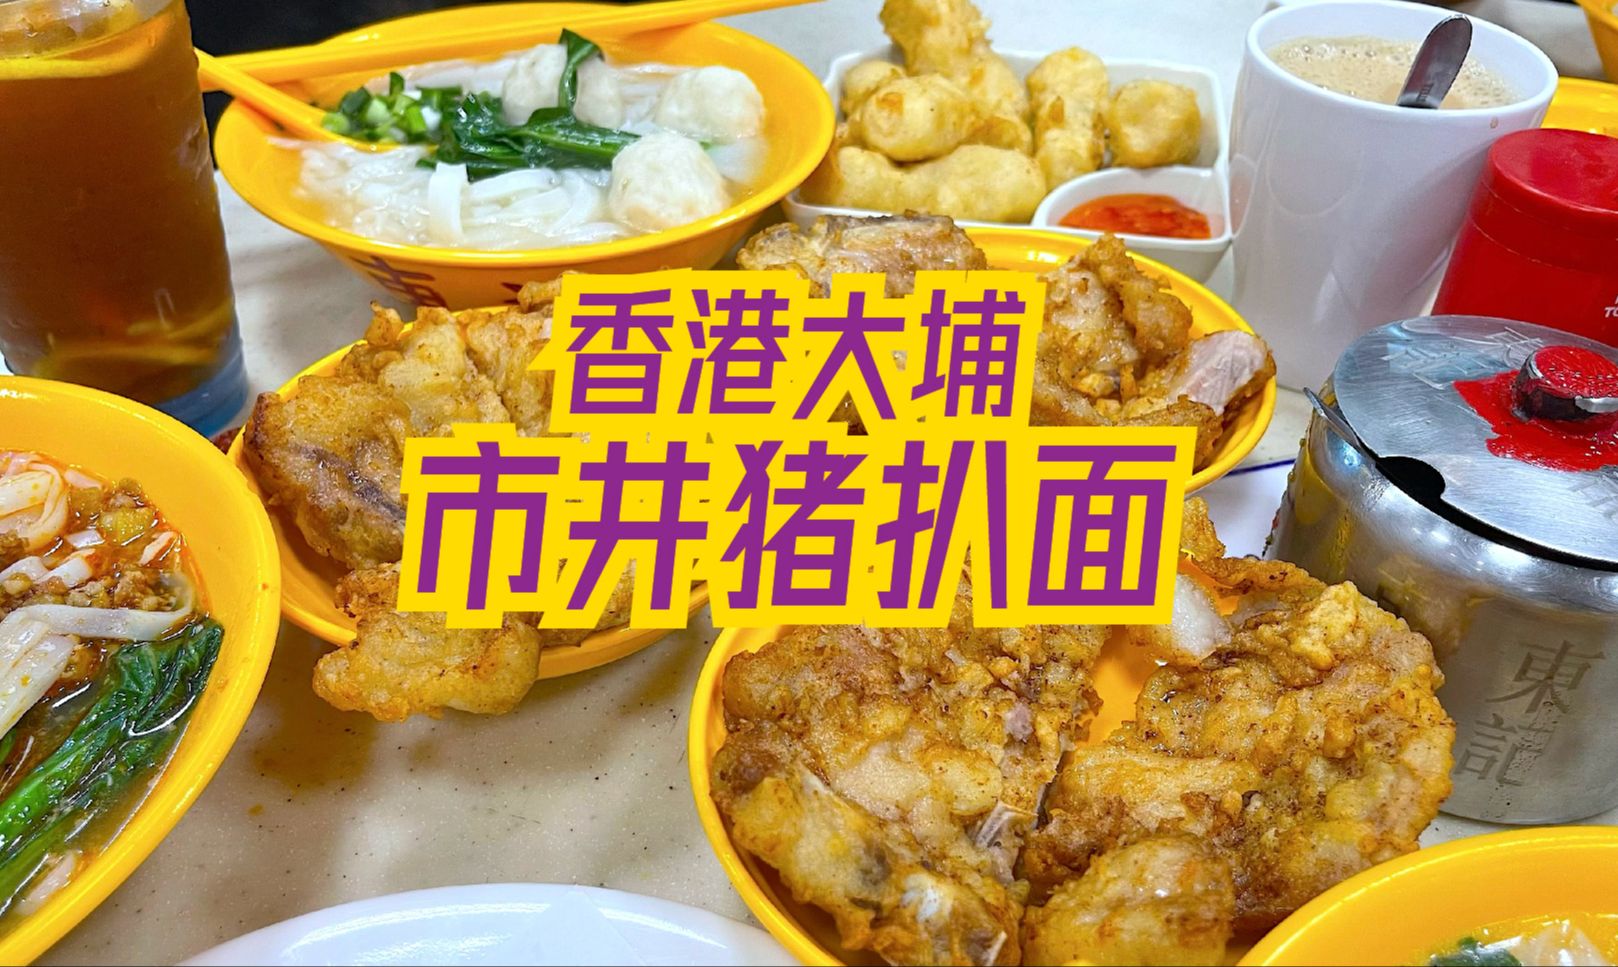 香港本地人去哪里吃？大埔墟街市熟食中心~有多少惊喜是你所不知道的？超人气猪扒面、泰国菜、点心，你能想到的这里都有！